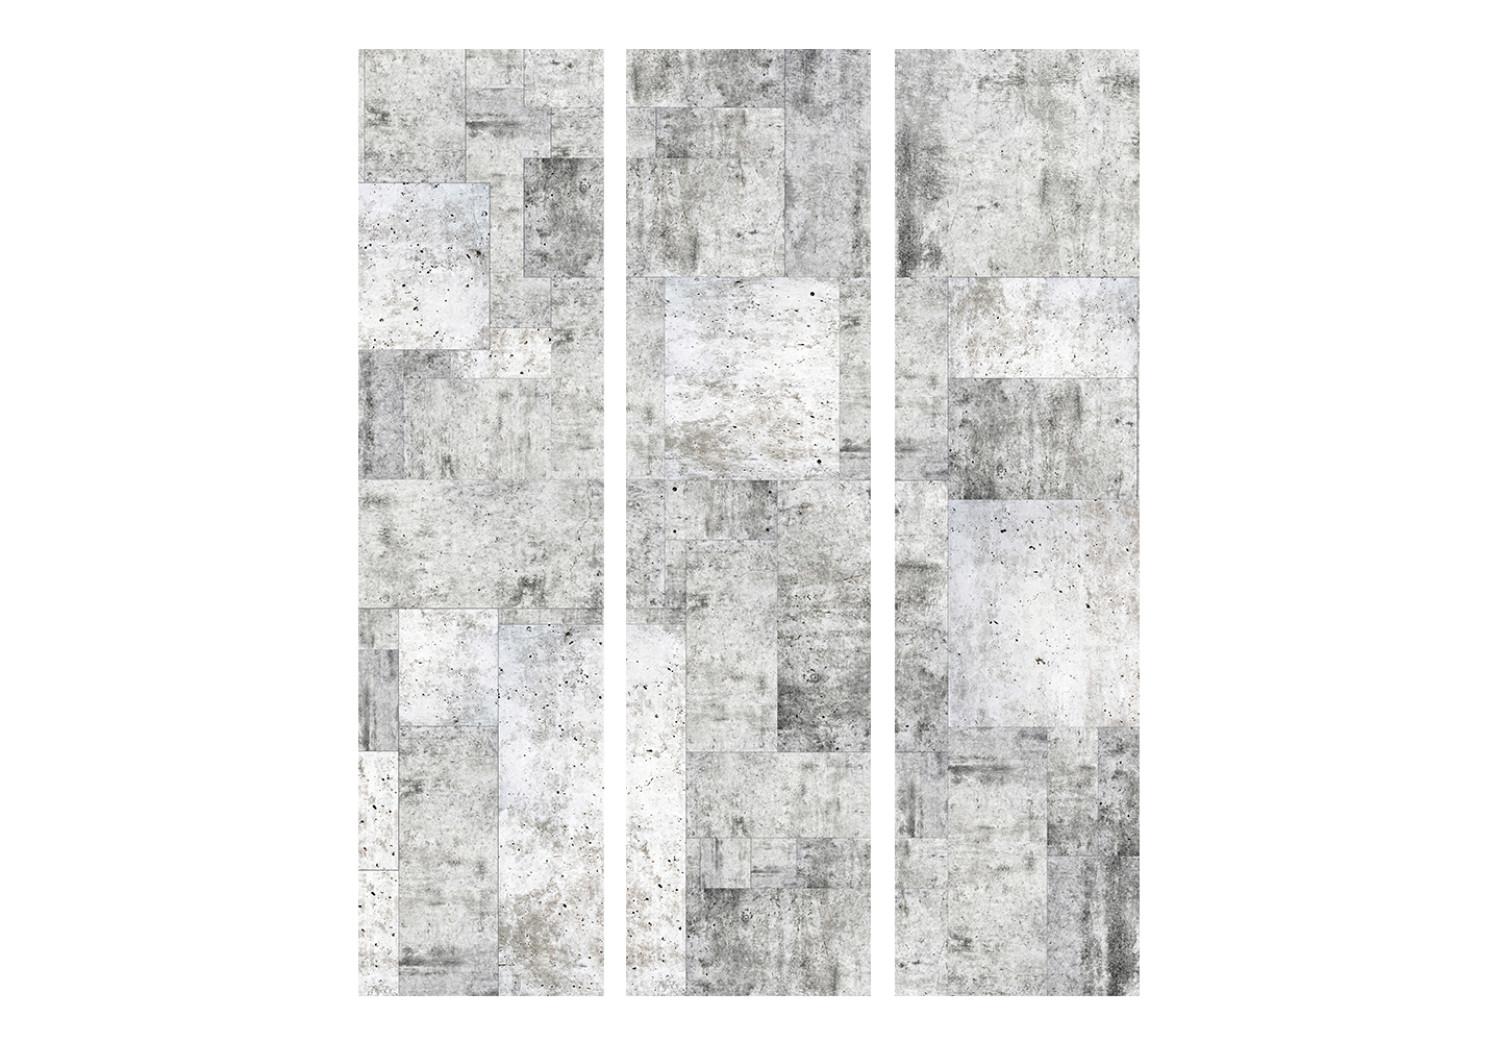 Biombo Concreto: Ciudad gris (3 partes) - composición simple sobre fondo gris